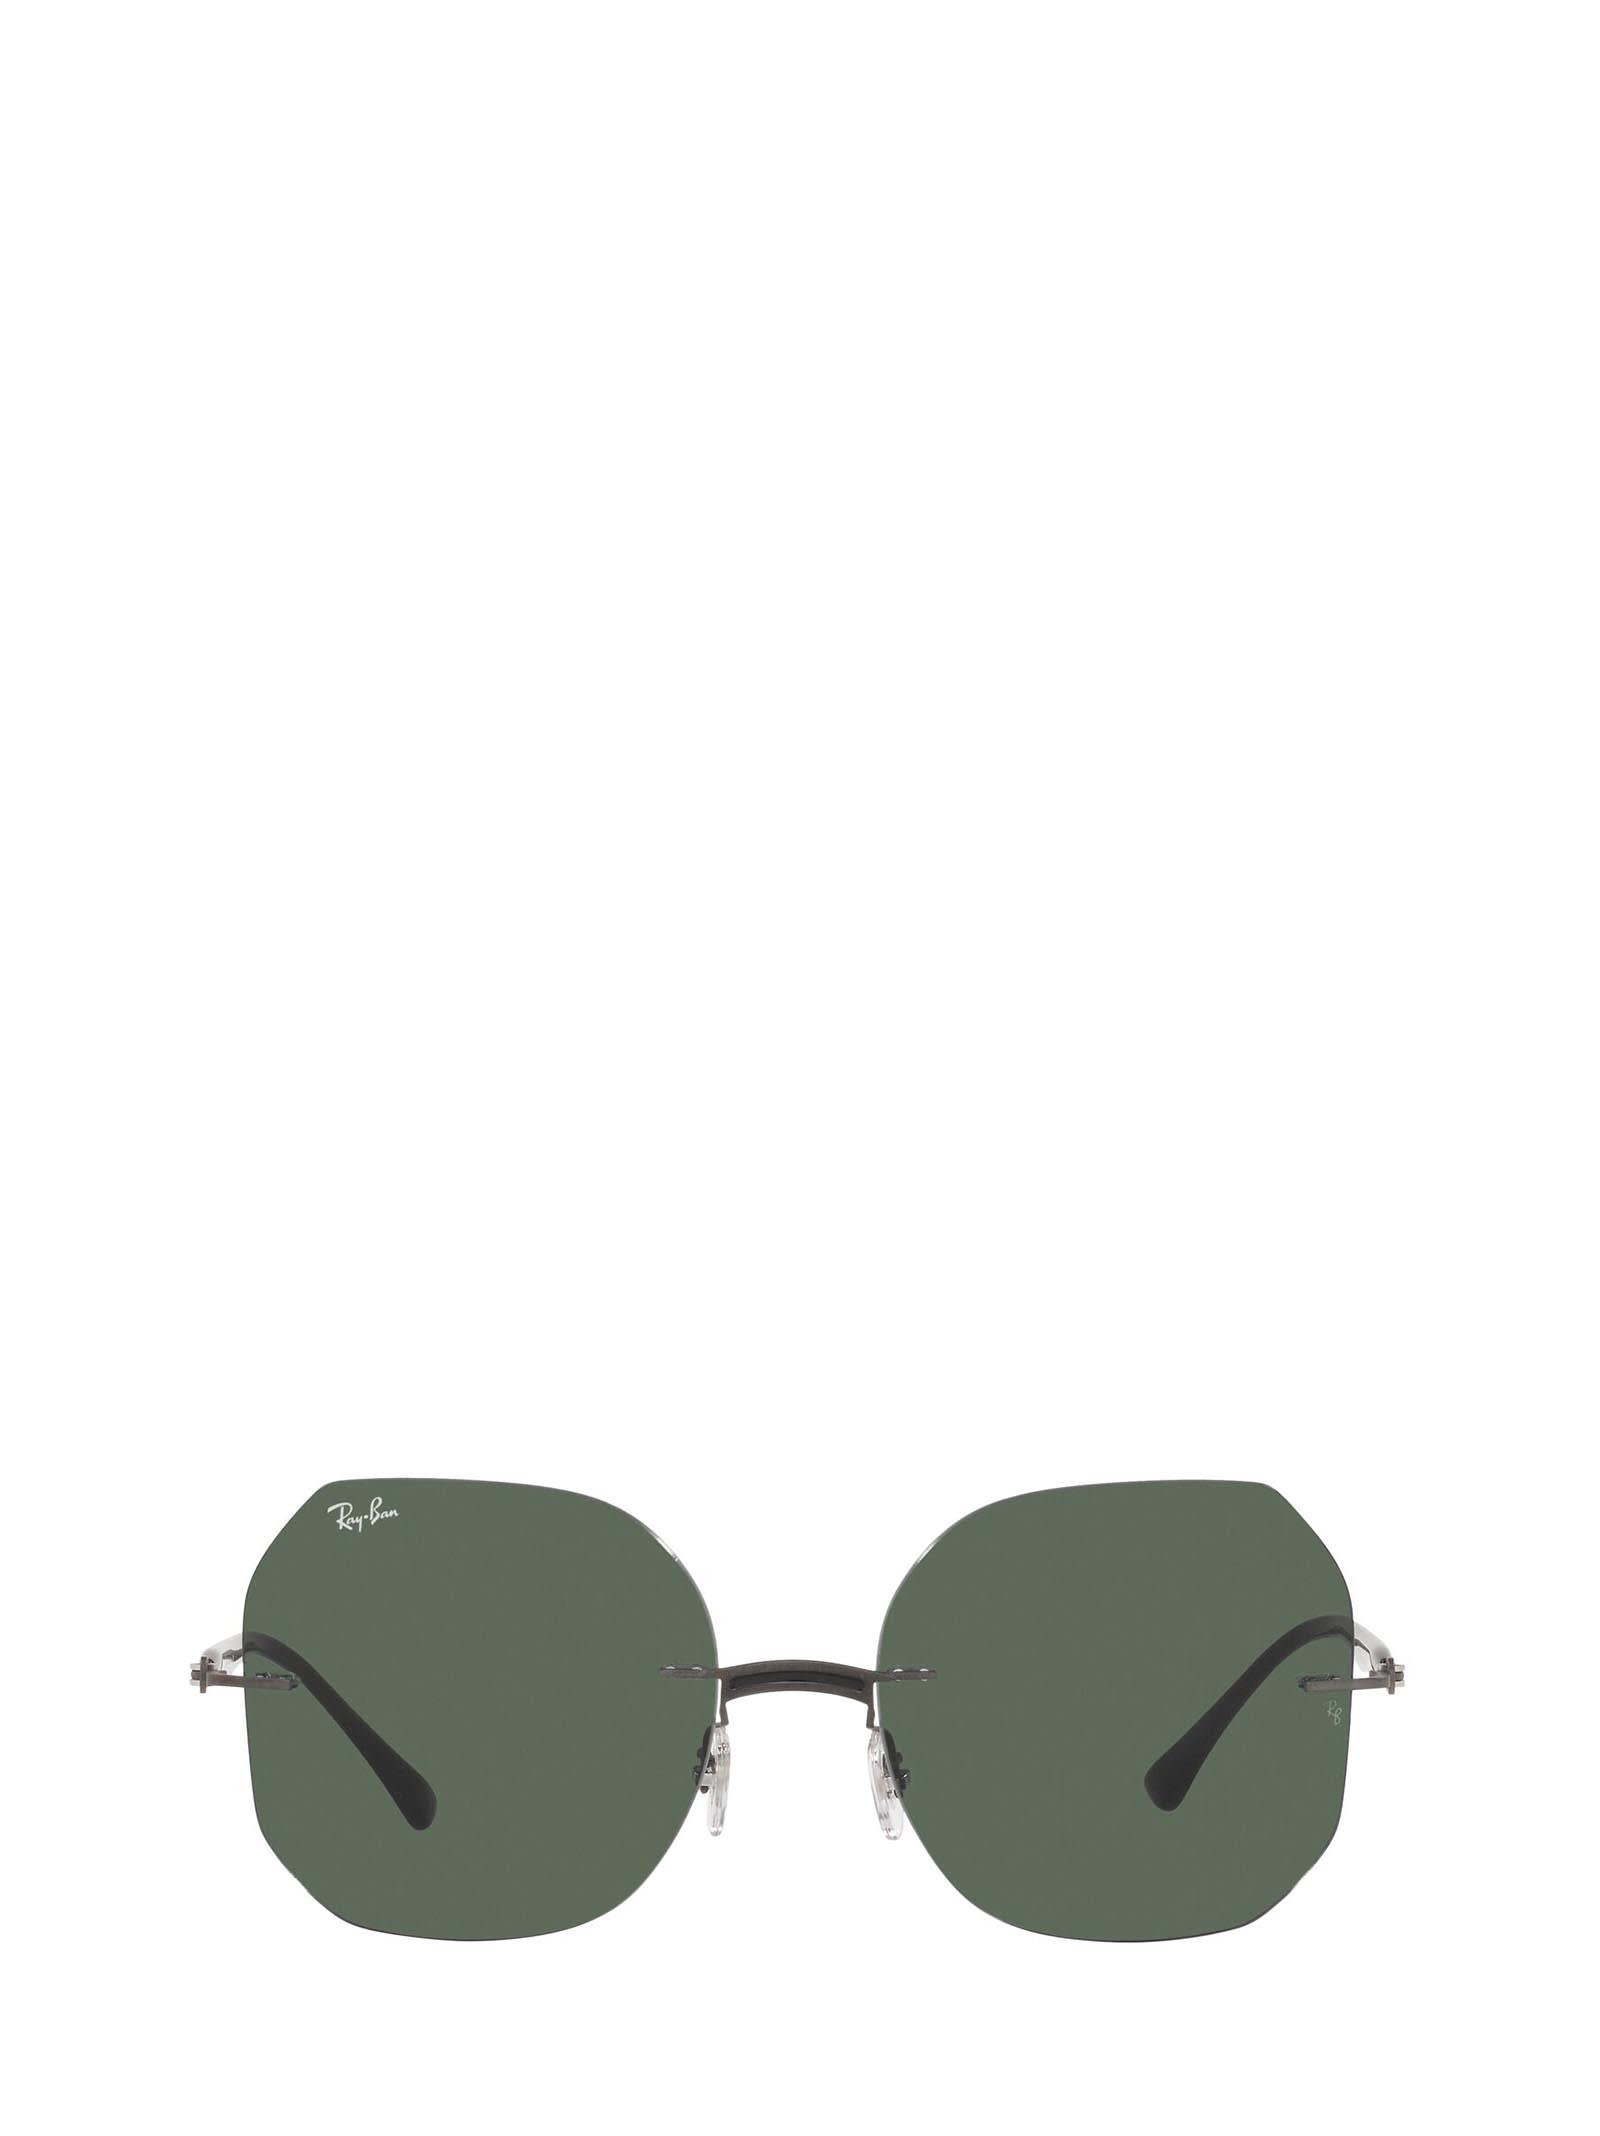 Ray-Ban Ray-ban Rb8067 Black On Sanding Gunmetal Sunglasses